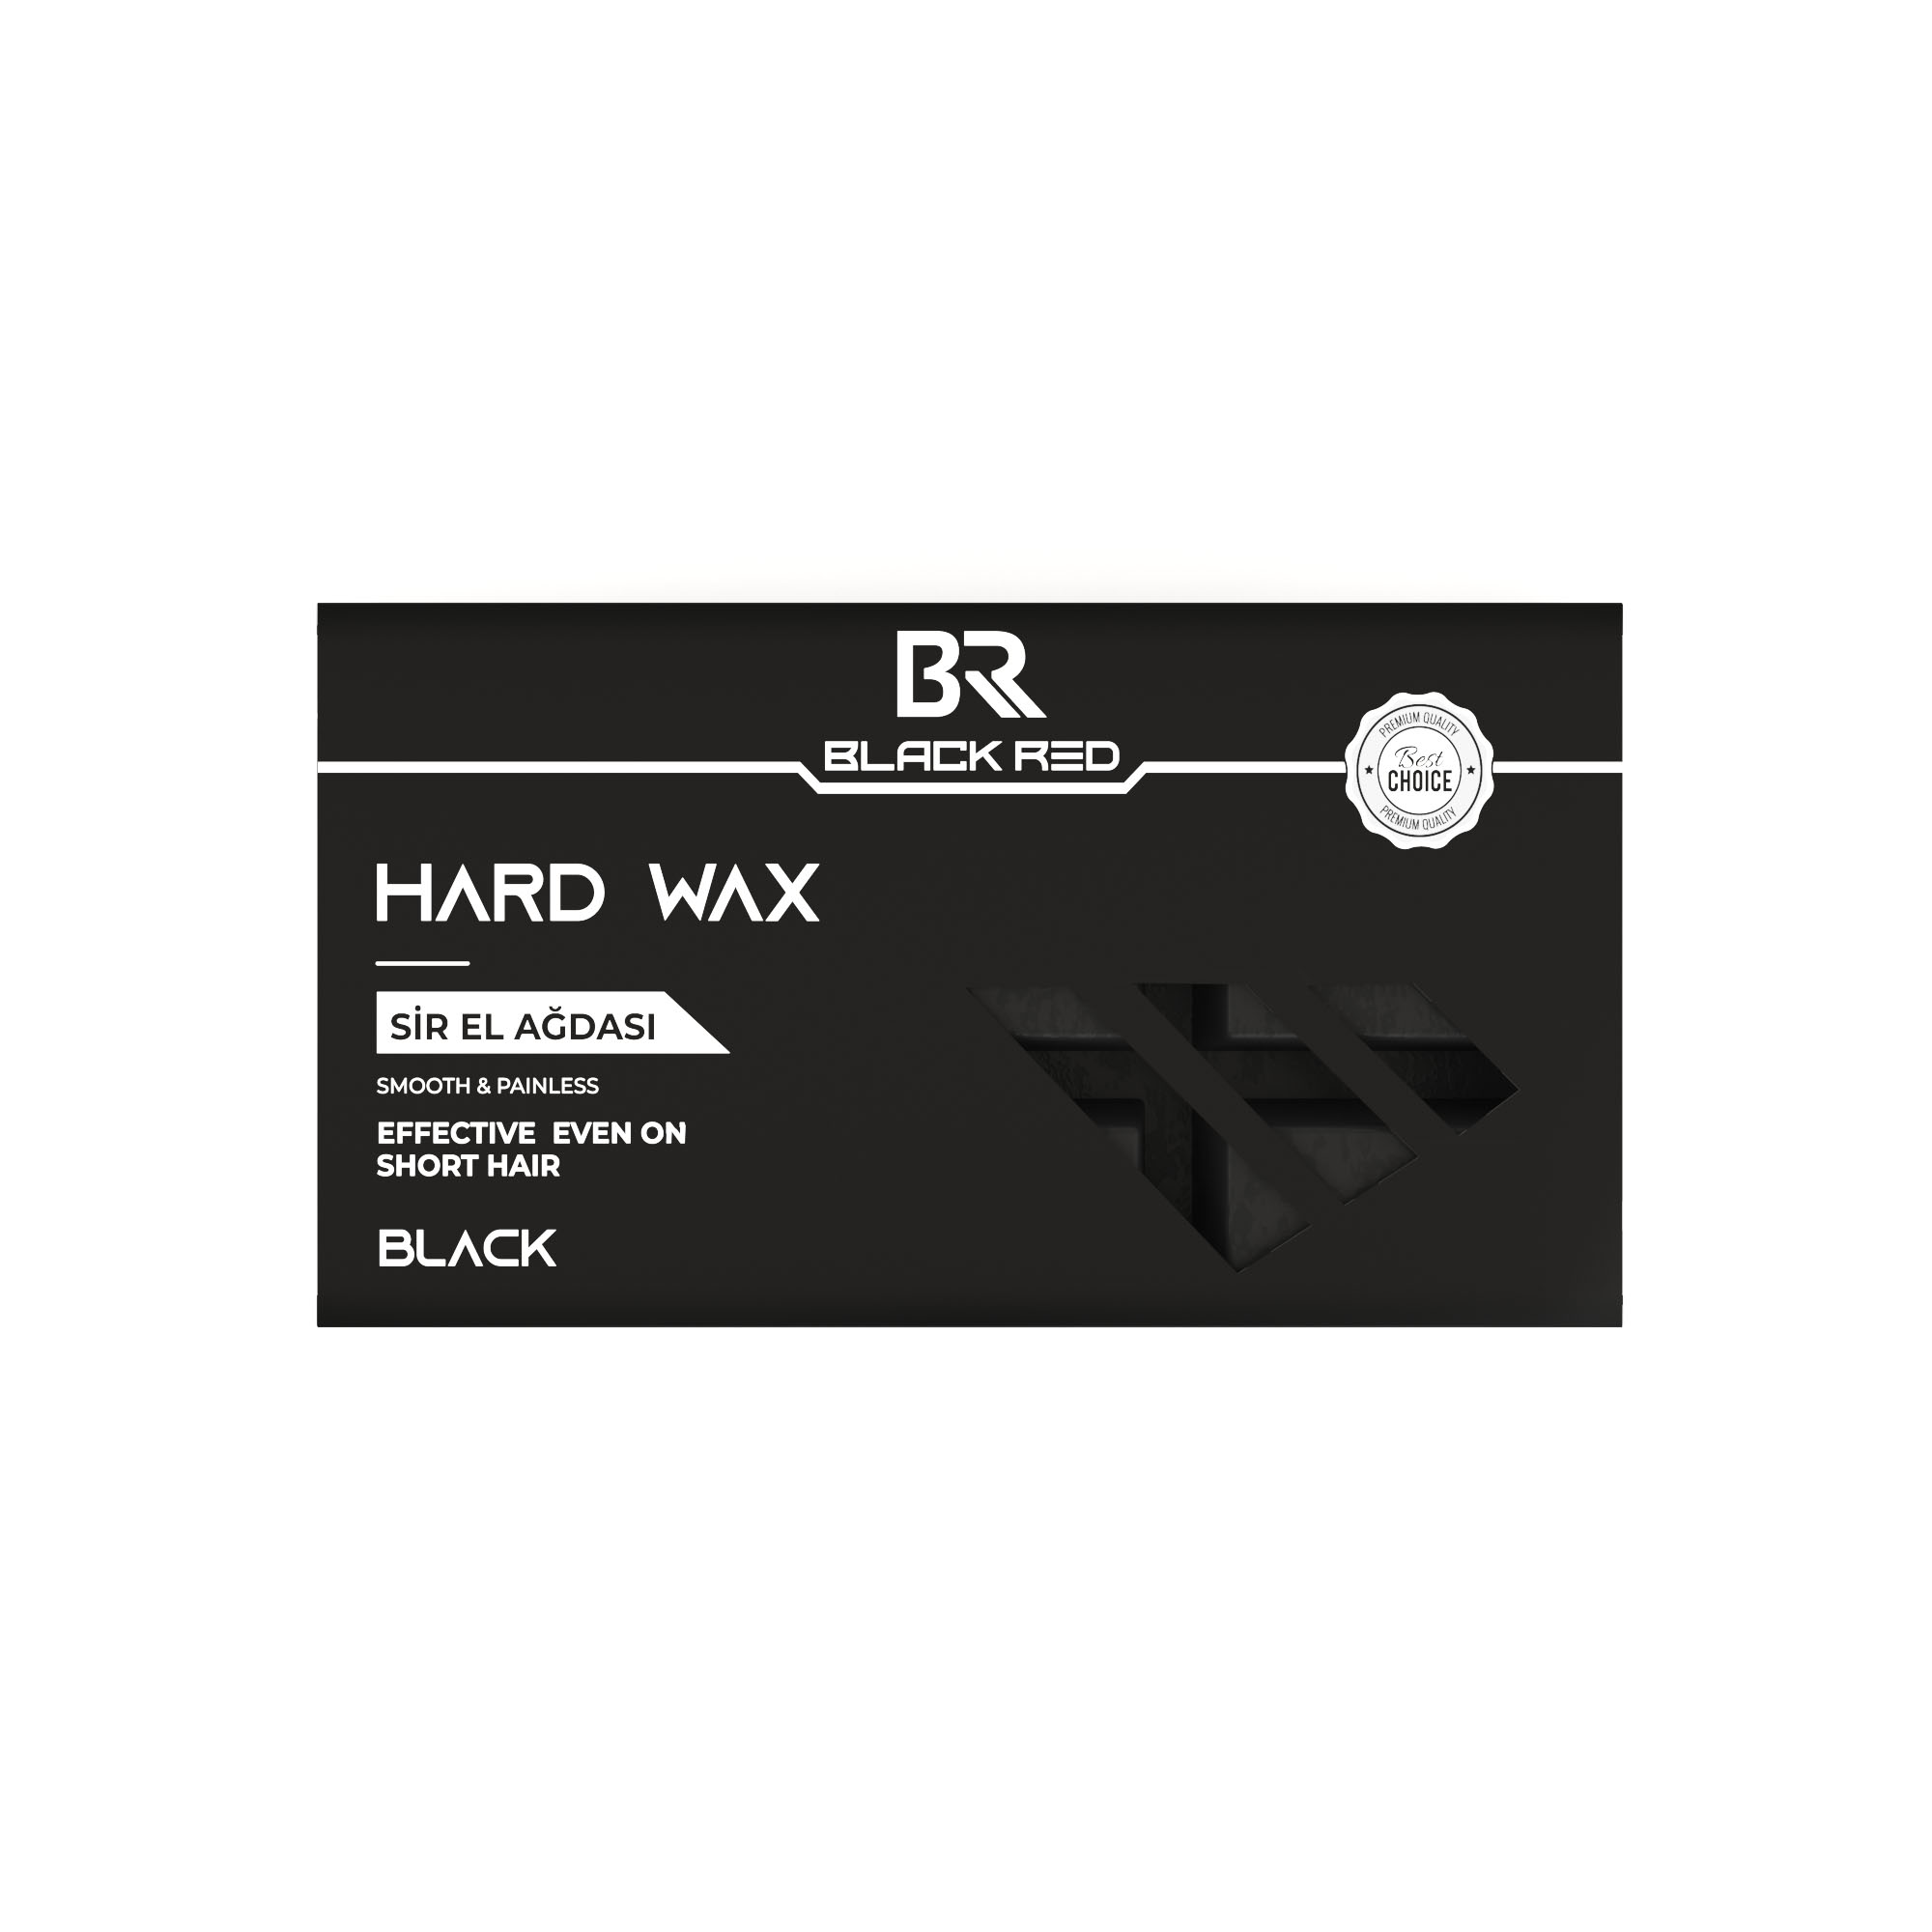 Hard Wax - Black